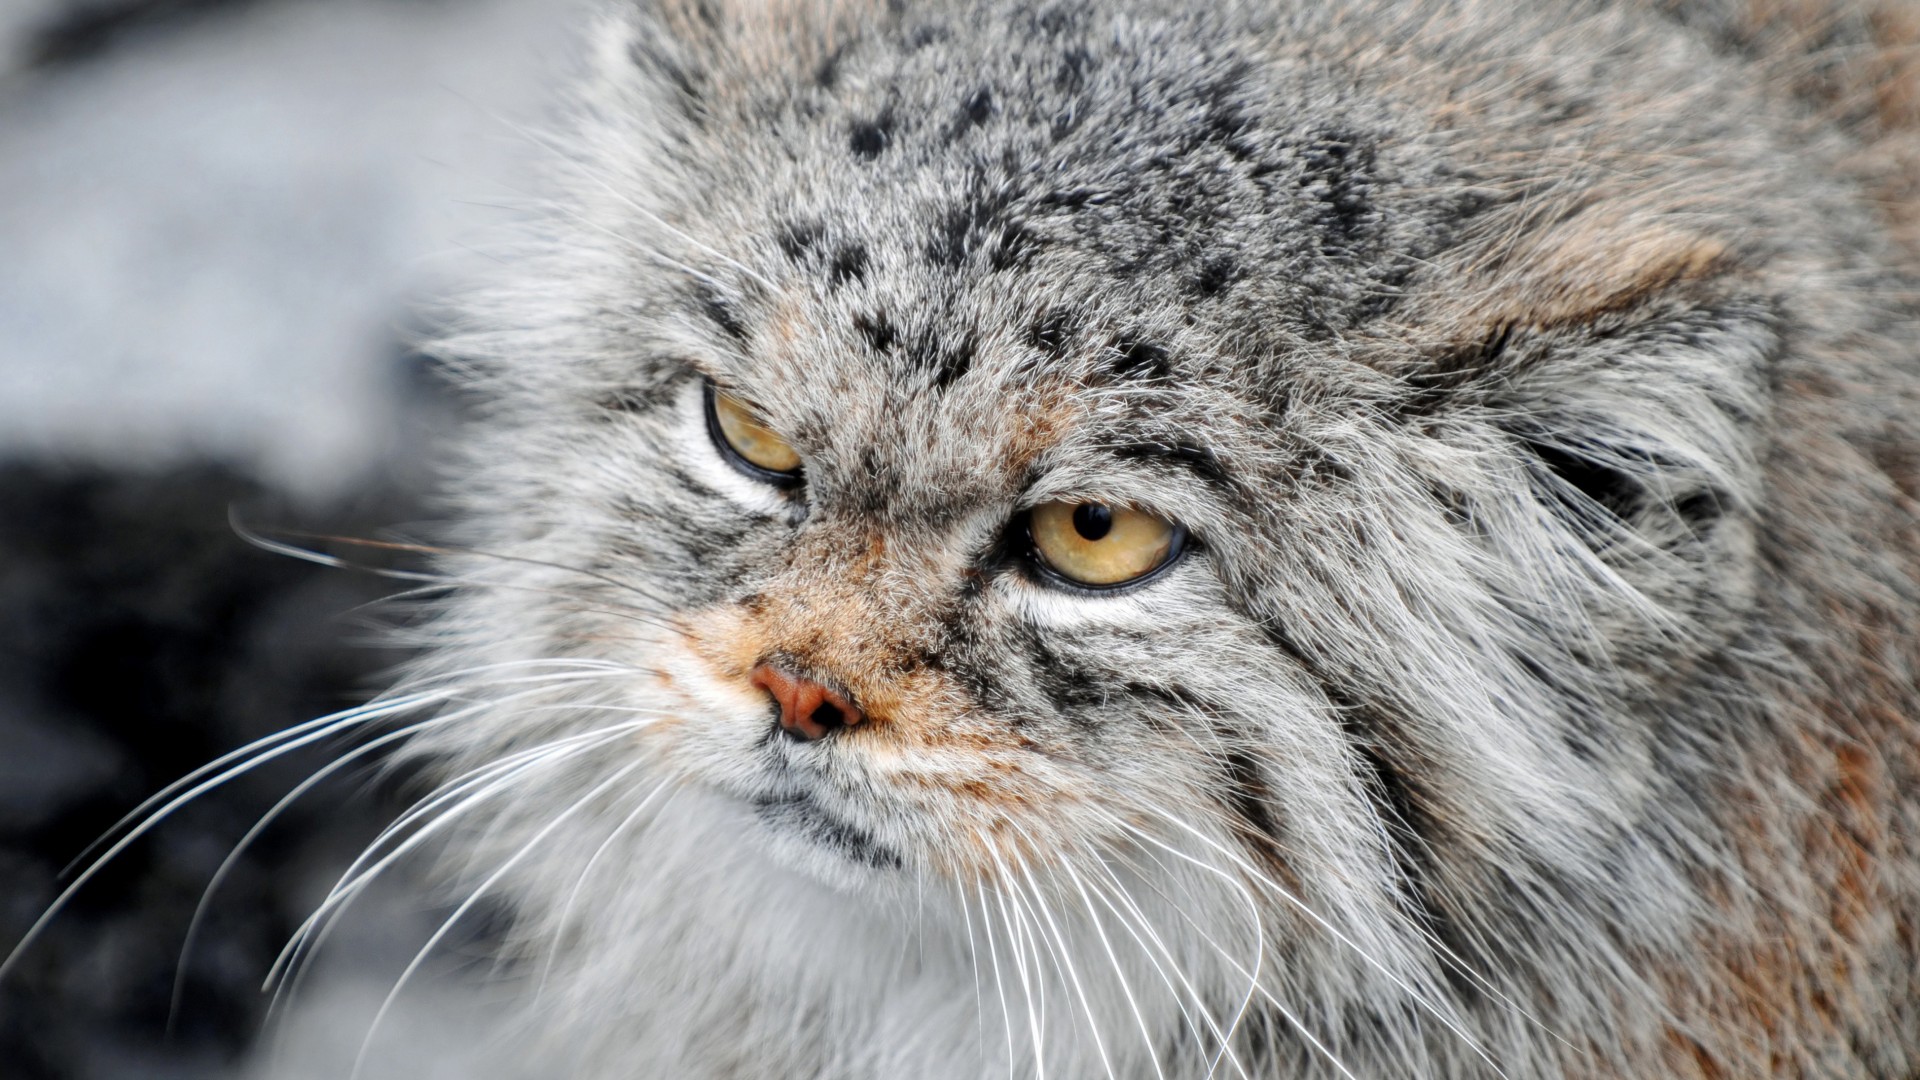 манул, сердитый кот, взгляд, пушистый, суровый, Manul, Grumpy cat, severe, fluffy, view (horizontal)